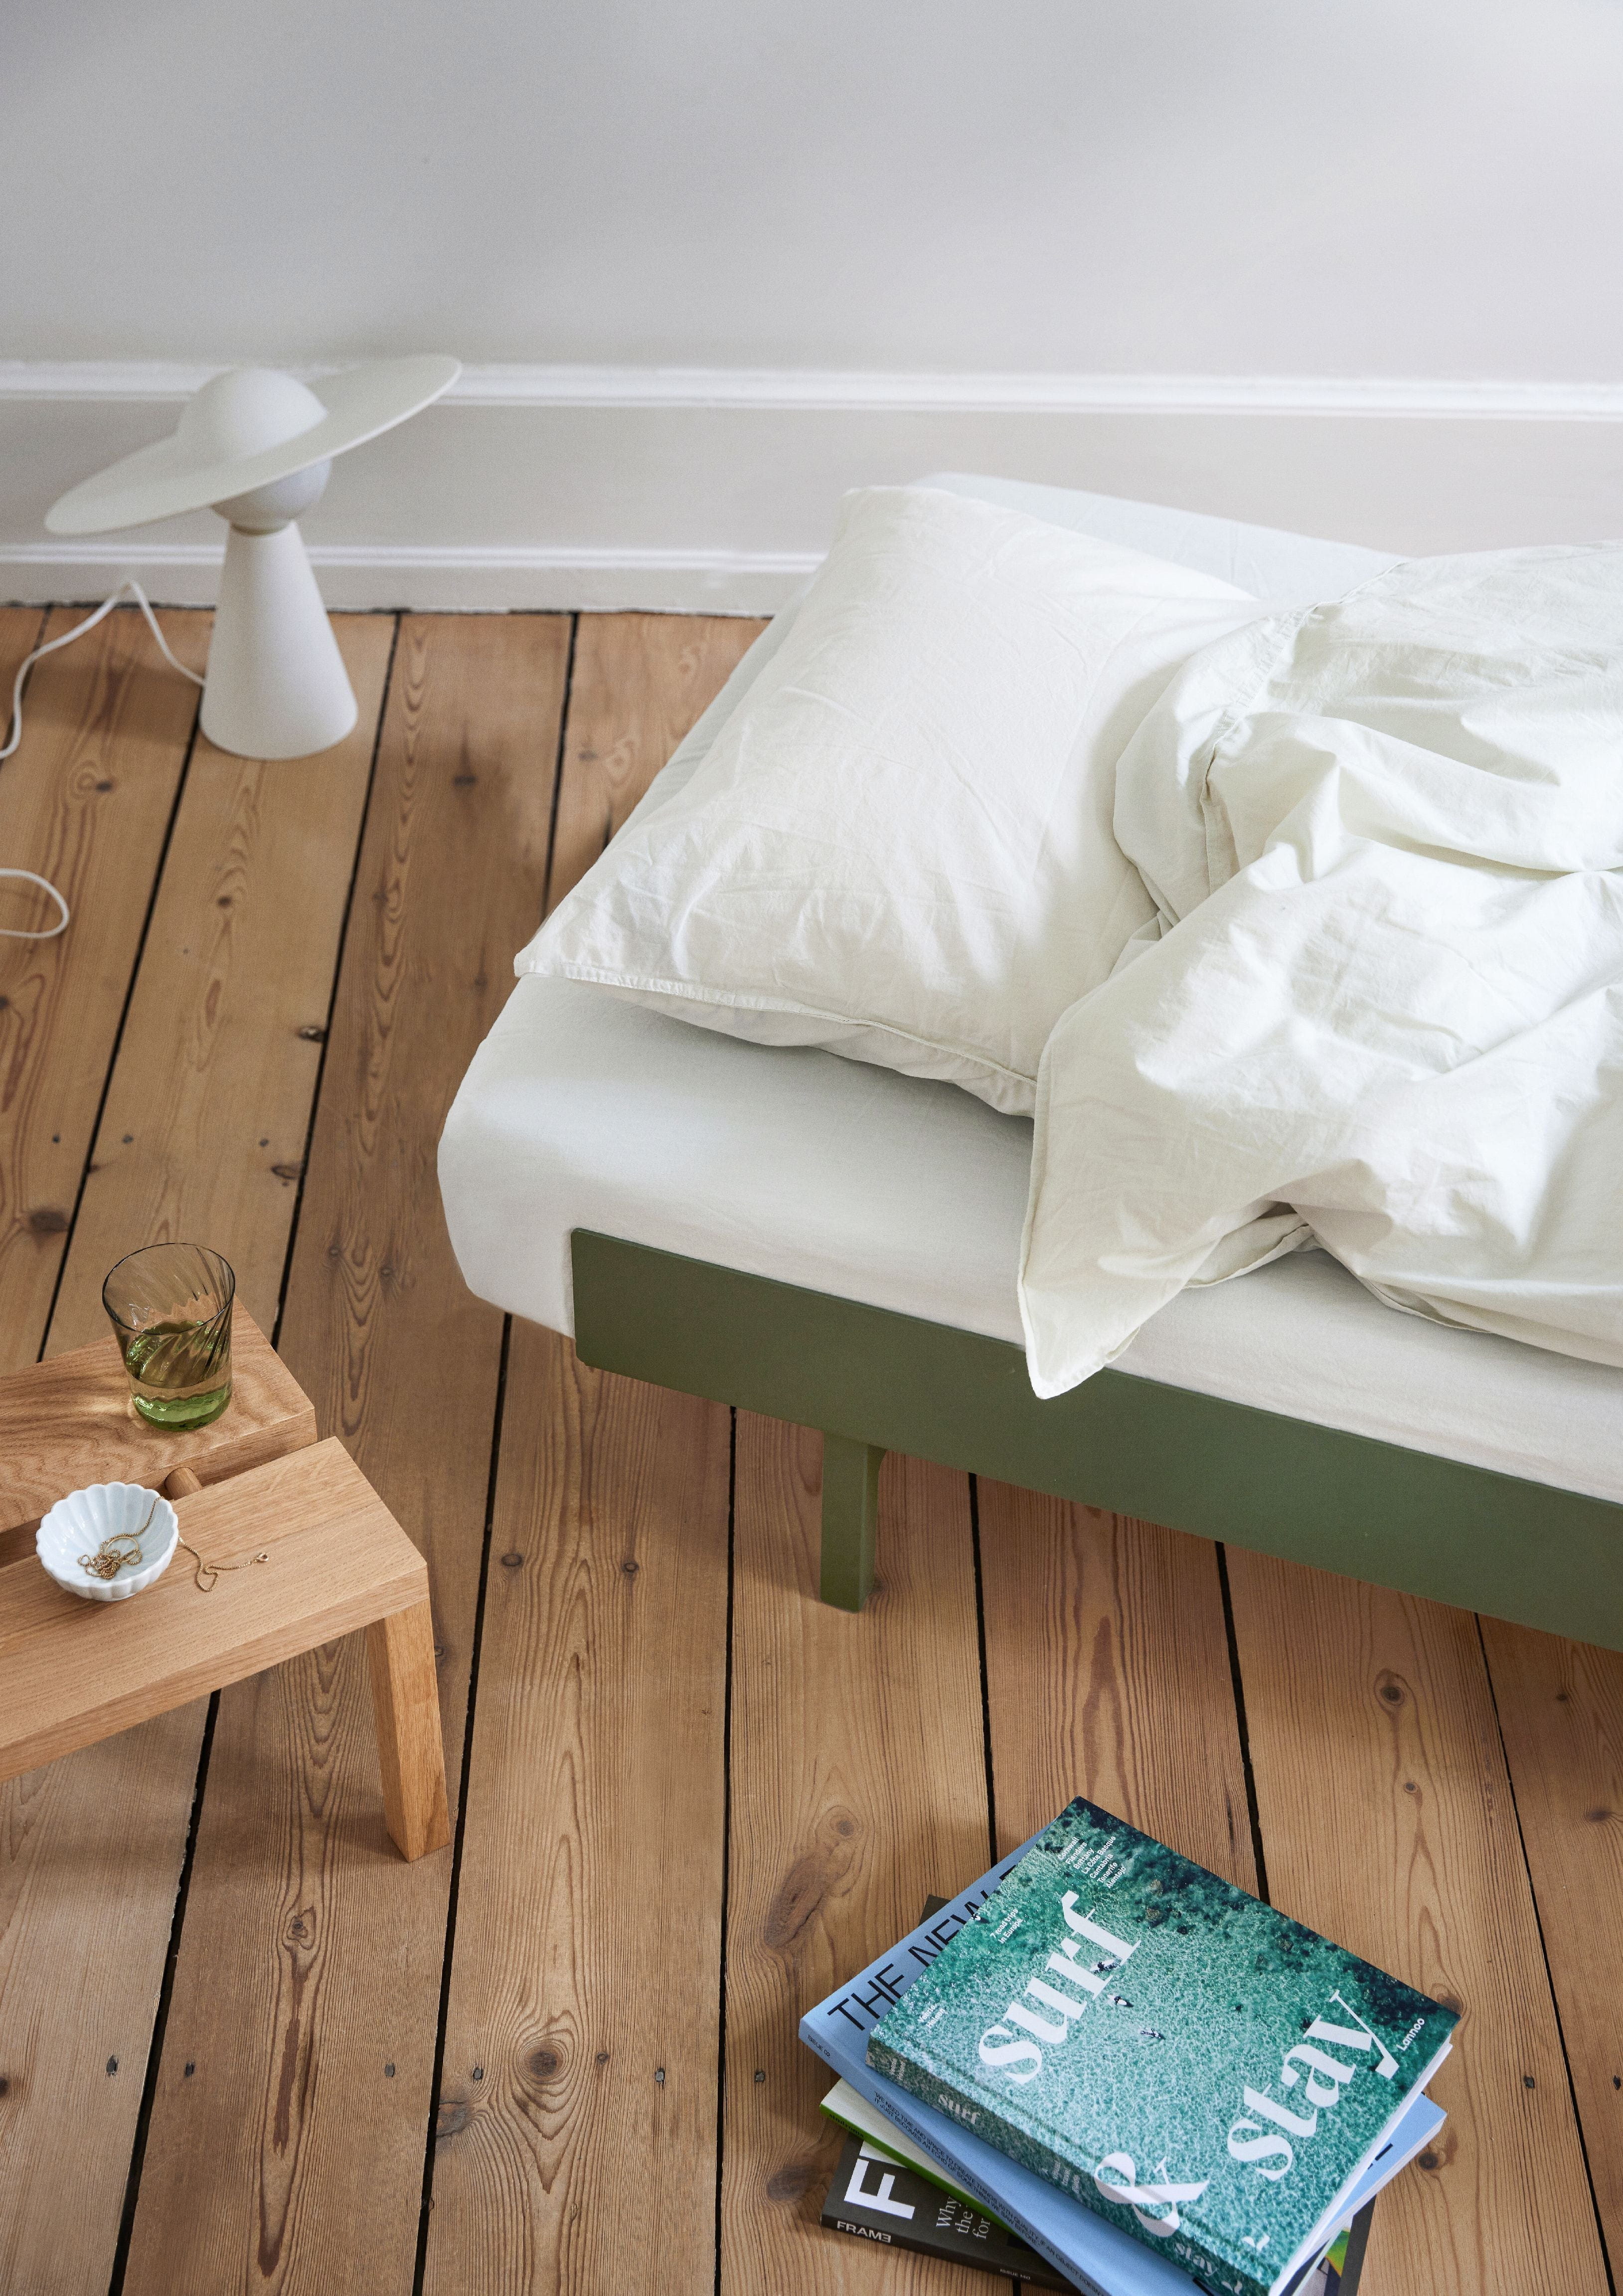 Moebe Säng med 1 sängbord 90 cm, tallgrön